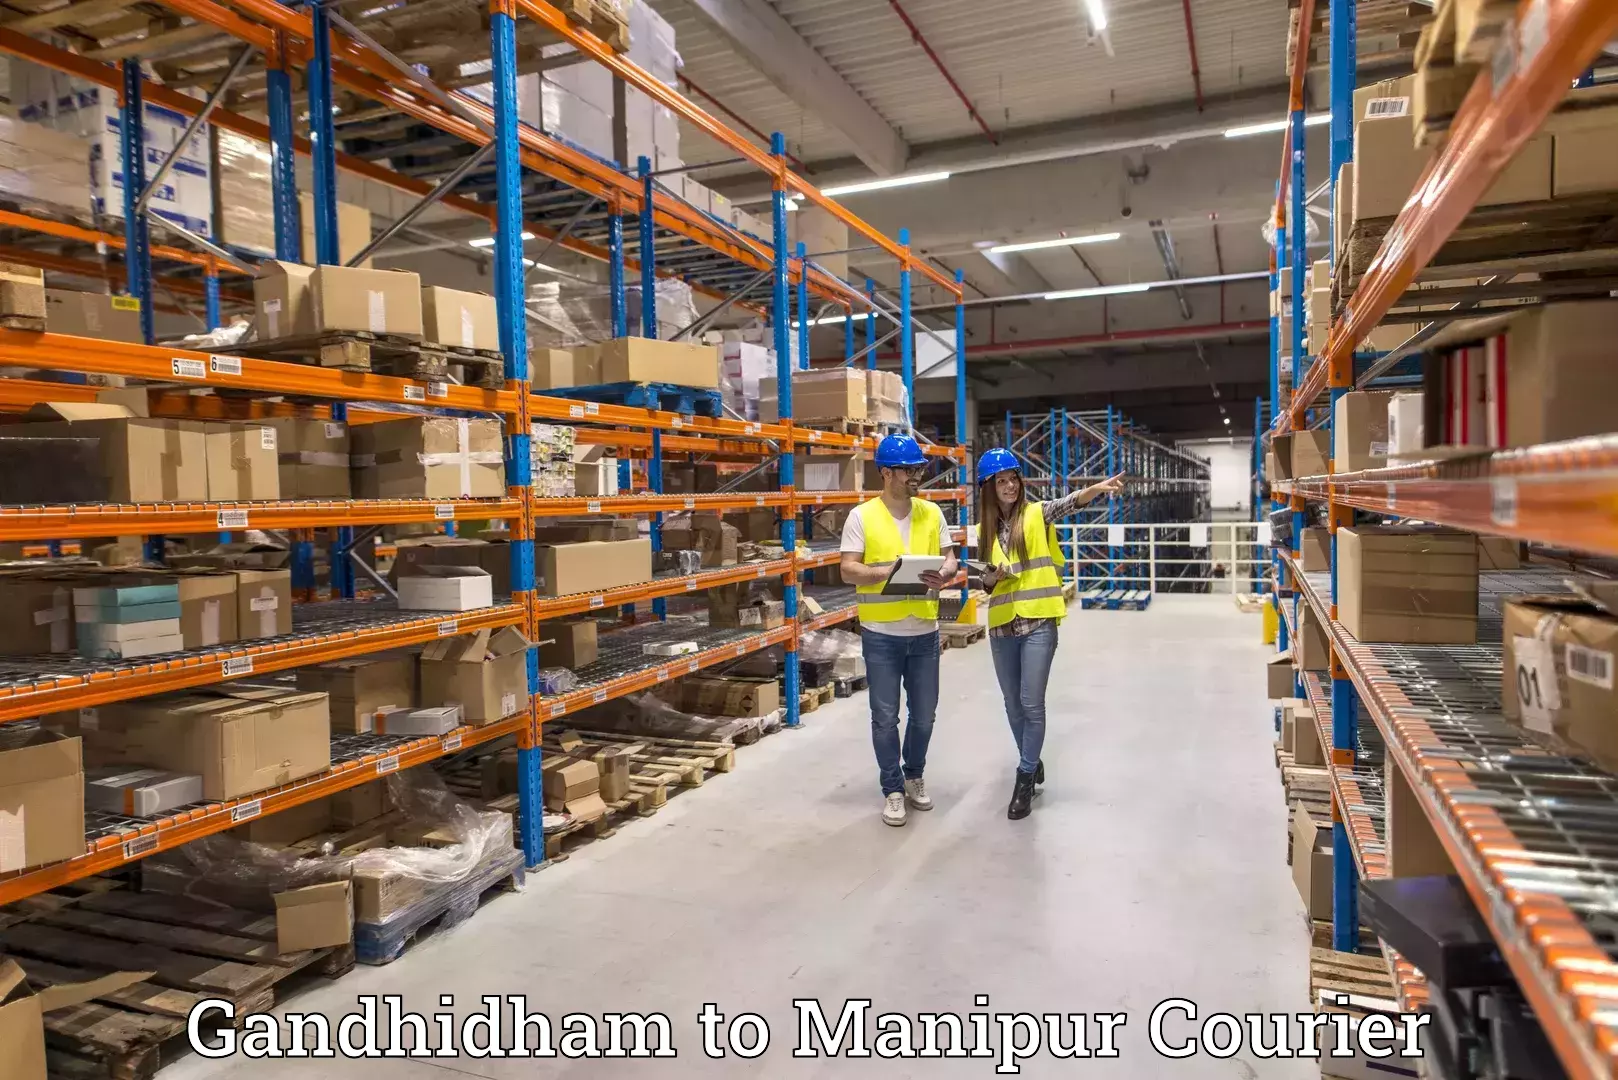 Courier service innovation Gandhidham to Churachandpur